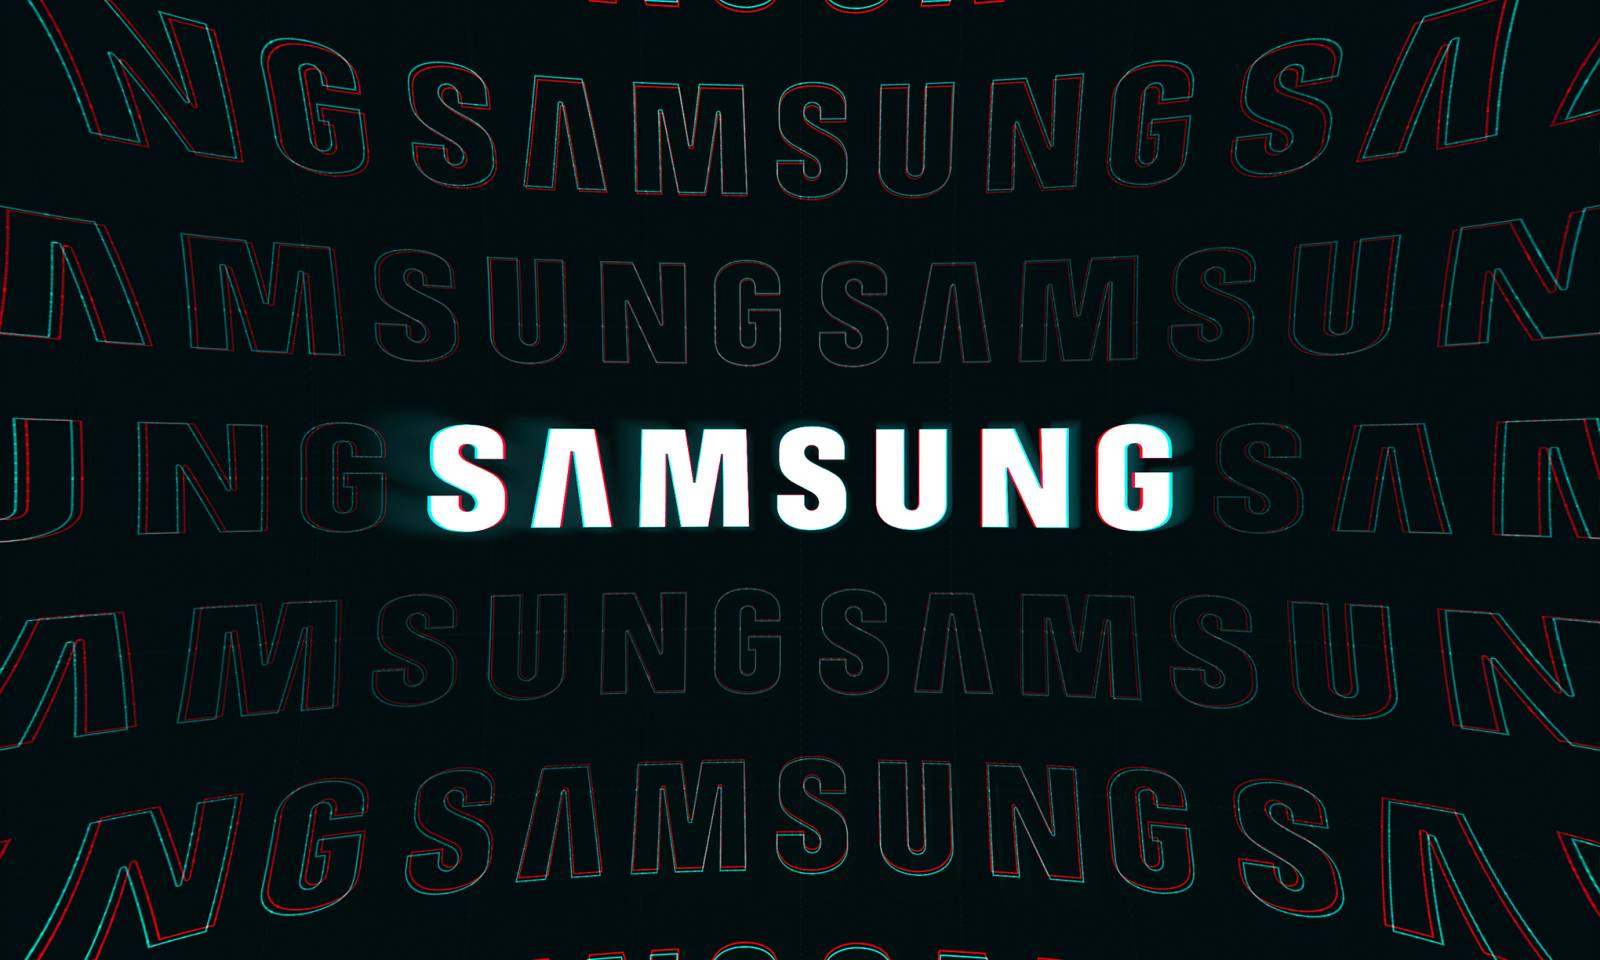 El anuncio de Samsung sorprende a los usuarios.